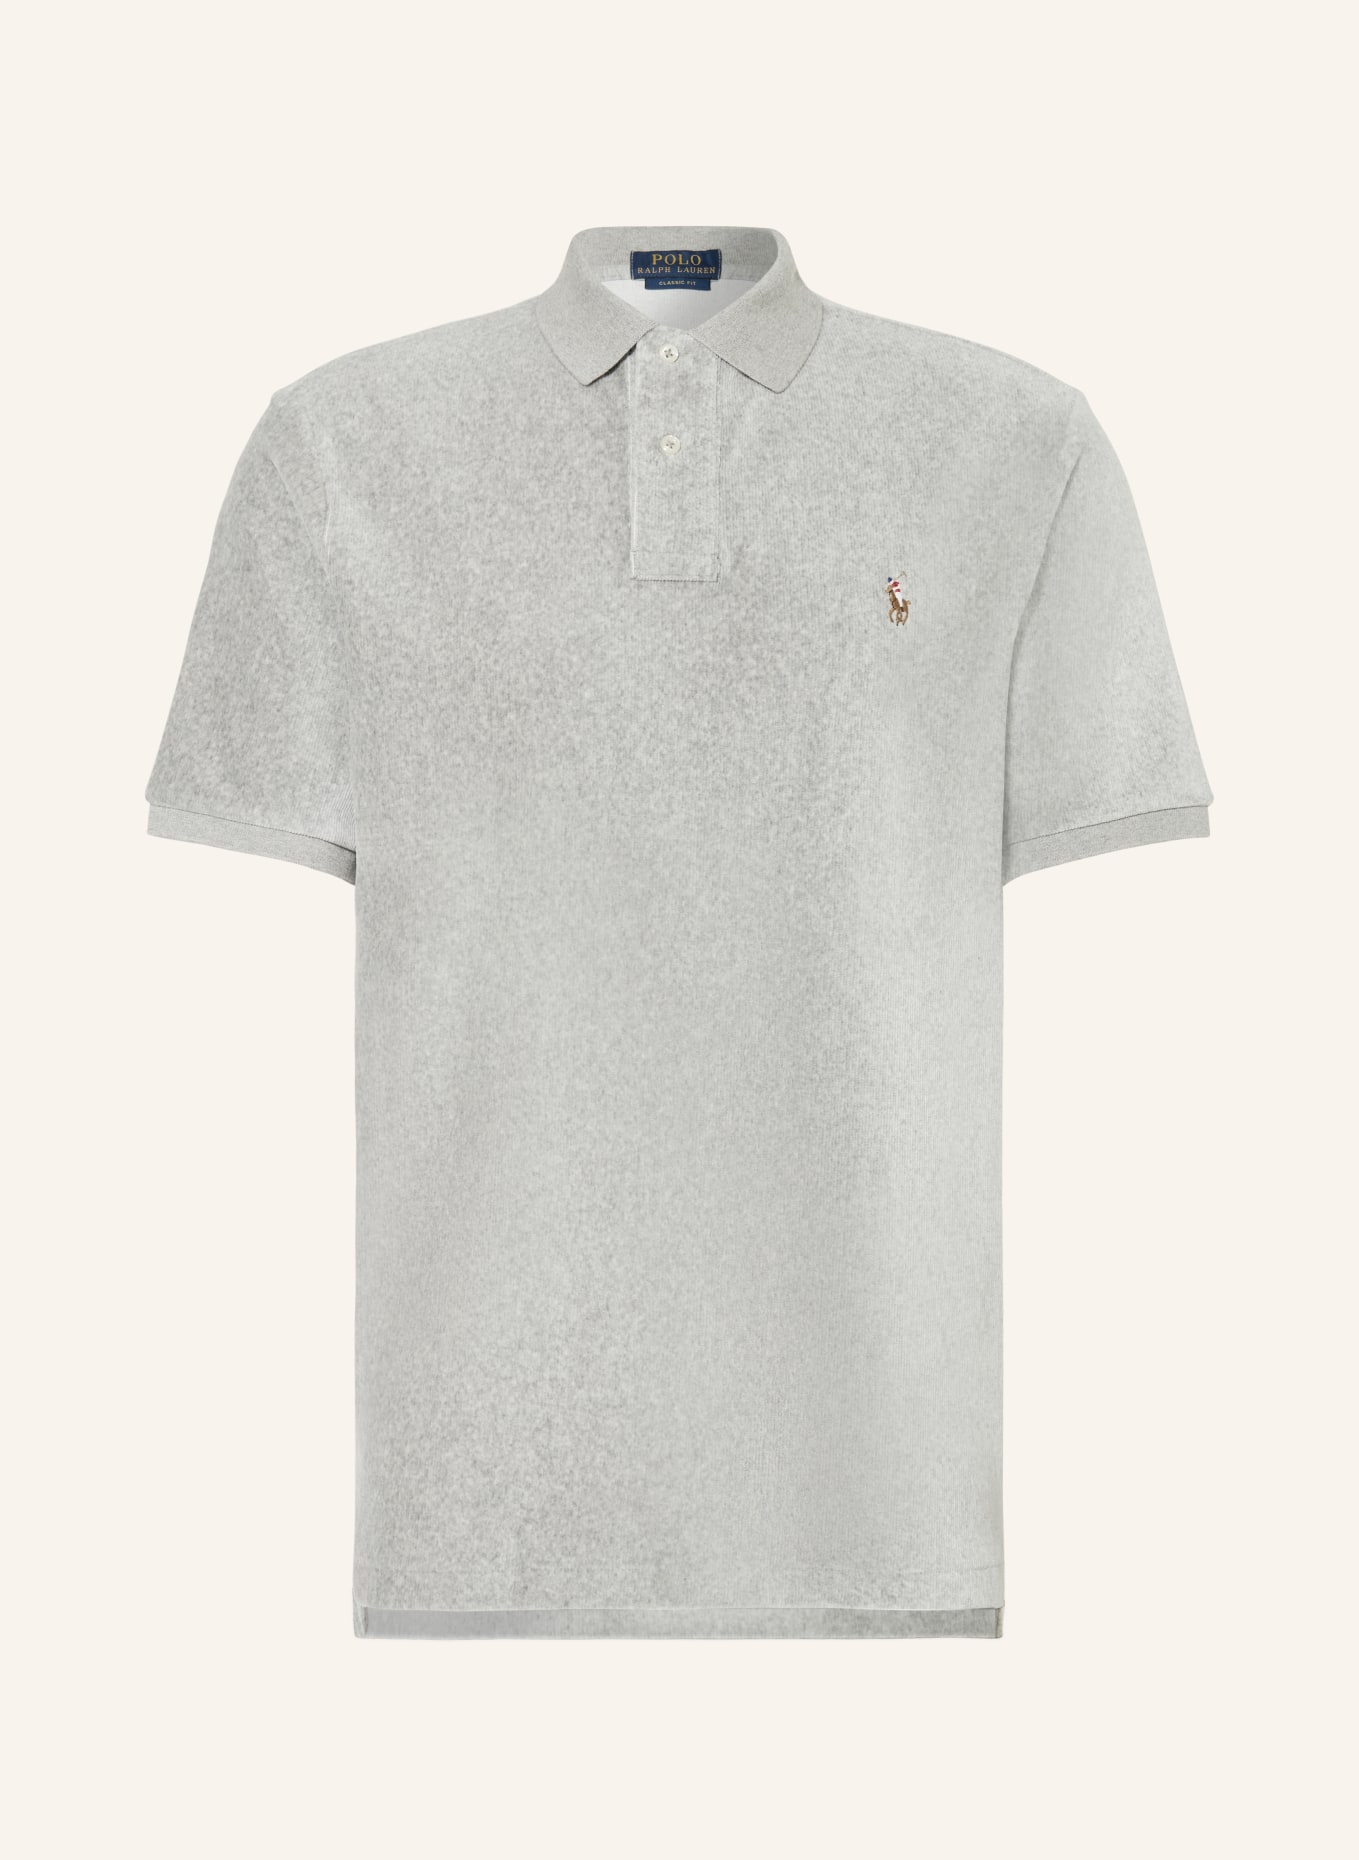 POLO RALPH LAUREN Cord-Poloshirt Classic Fit, Farbe: GRAU (Bild 1)